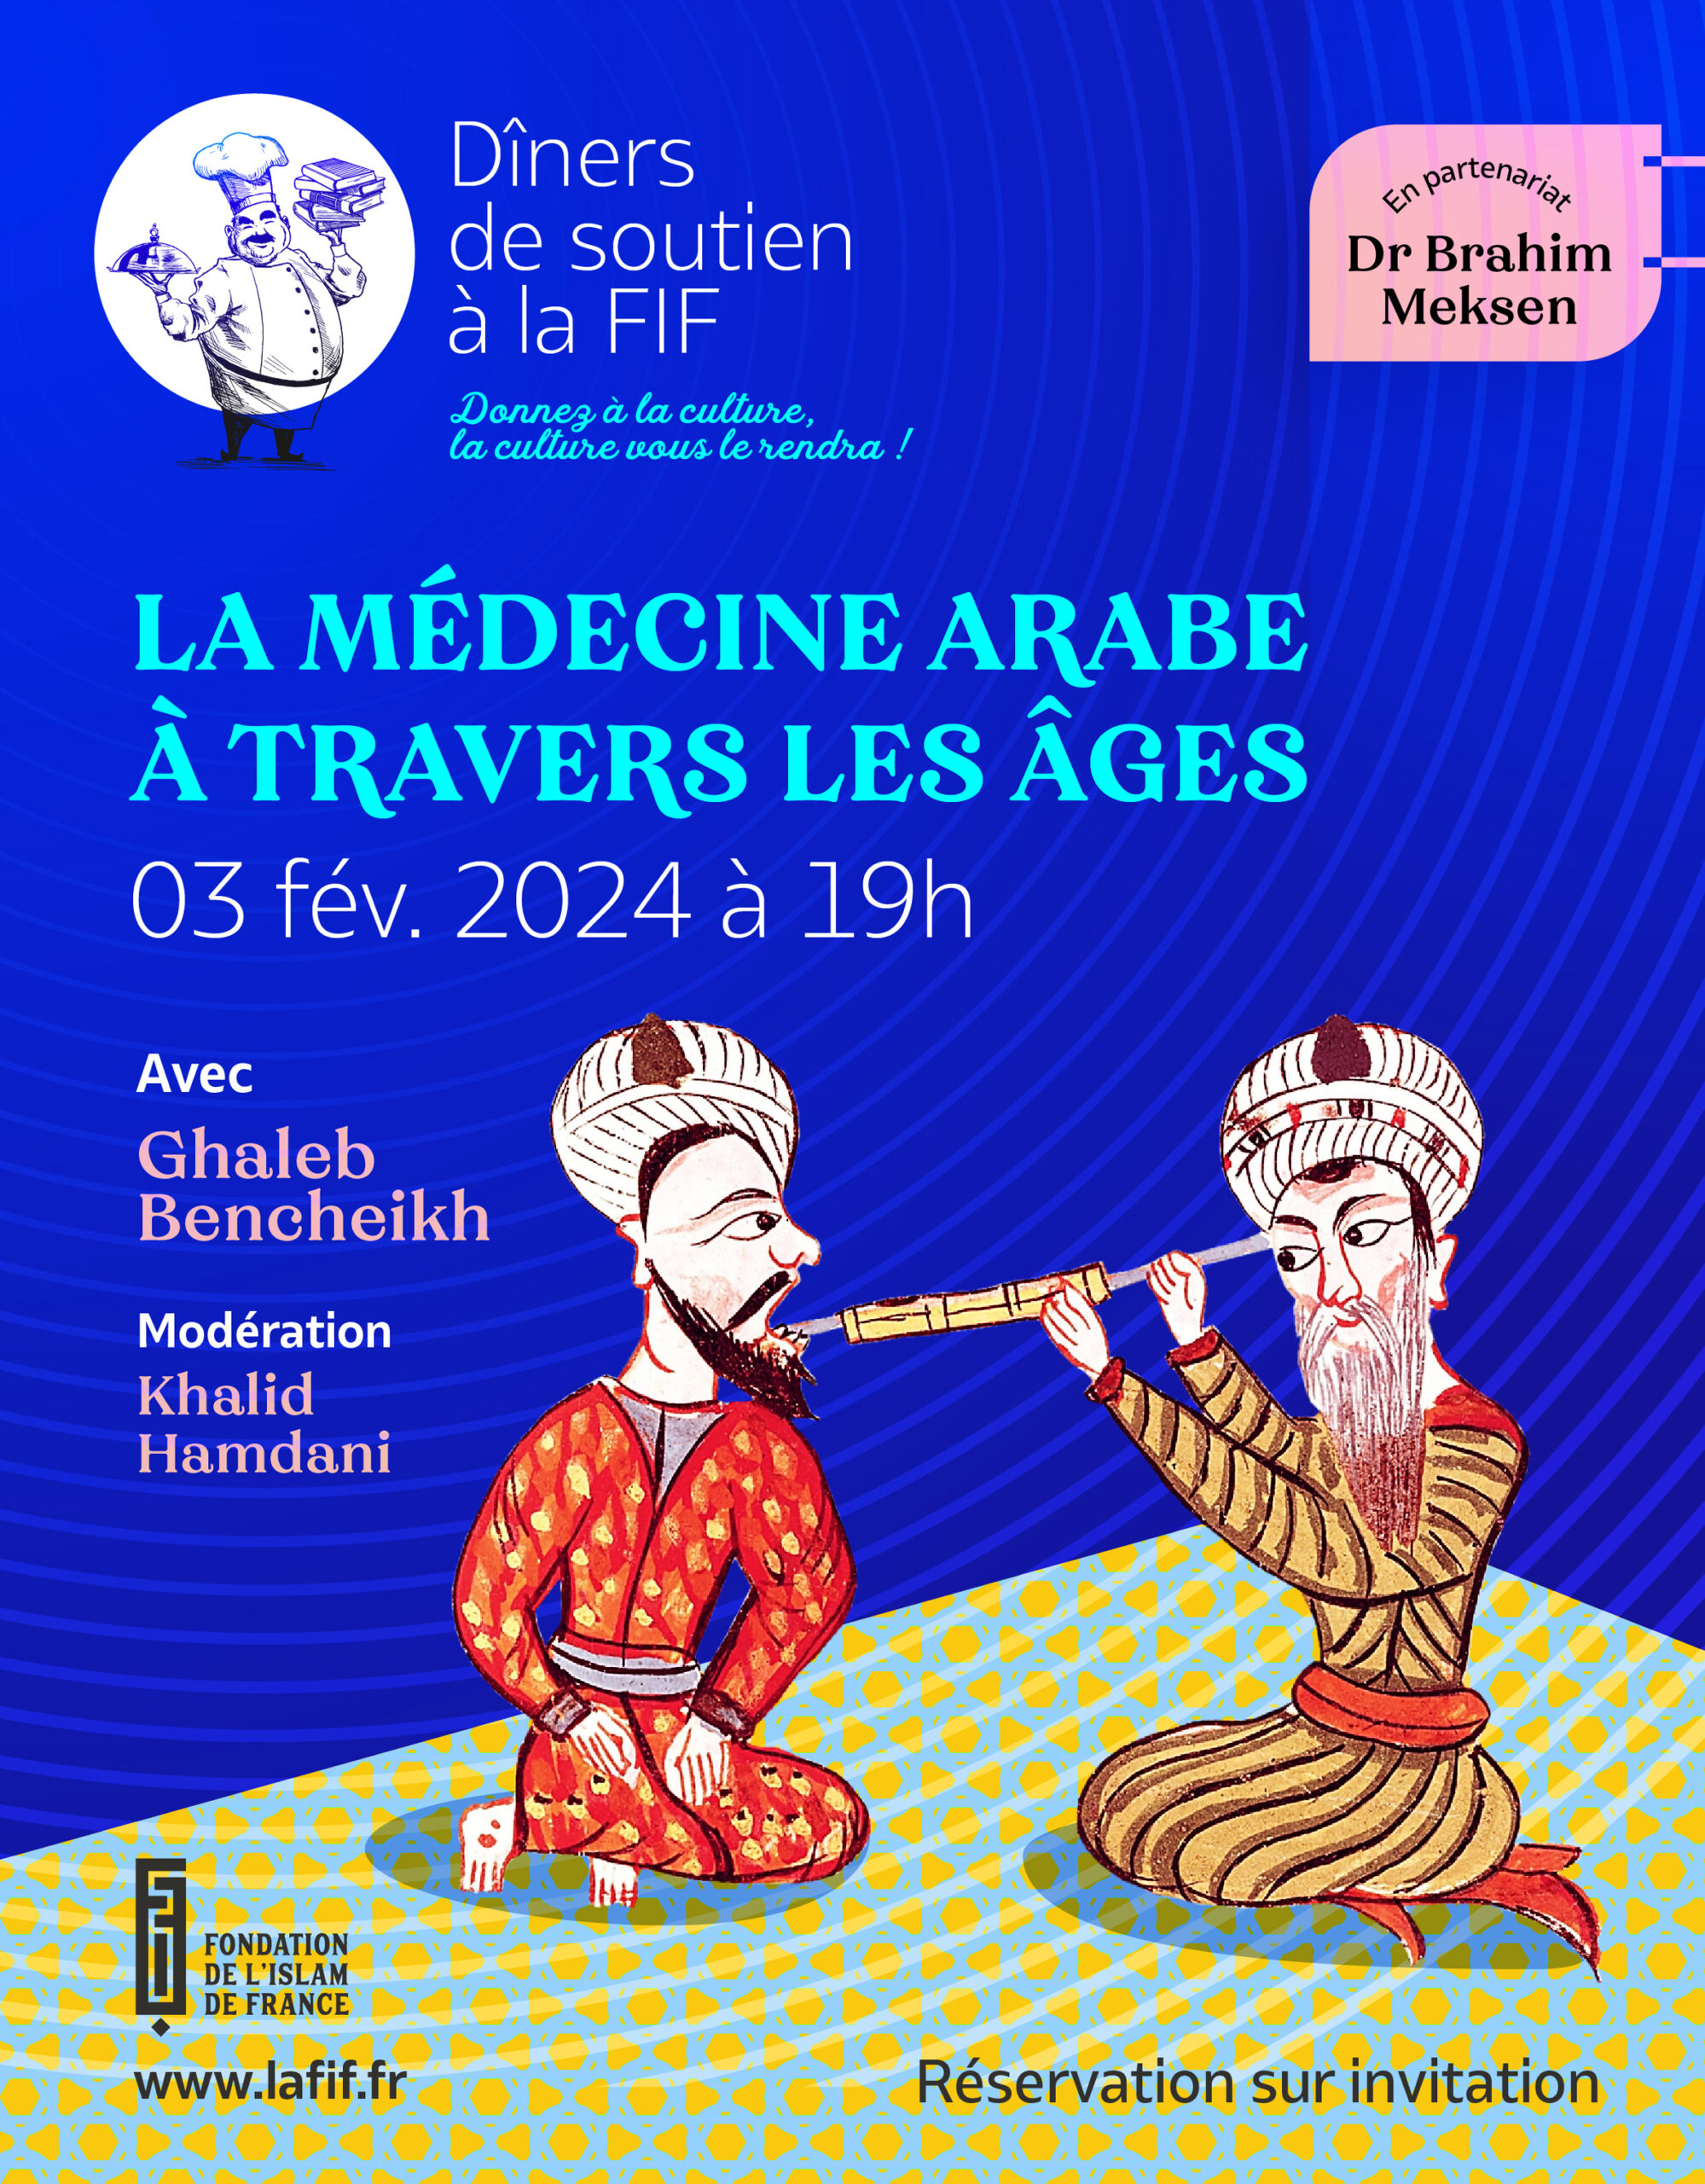 Dîner de soutien à la FIF. La médecine arabe à travers les âges.